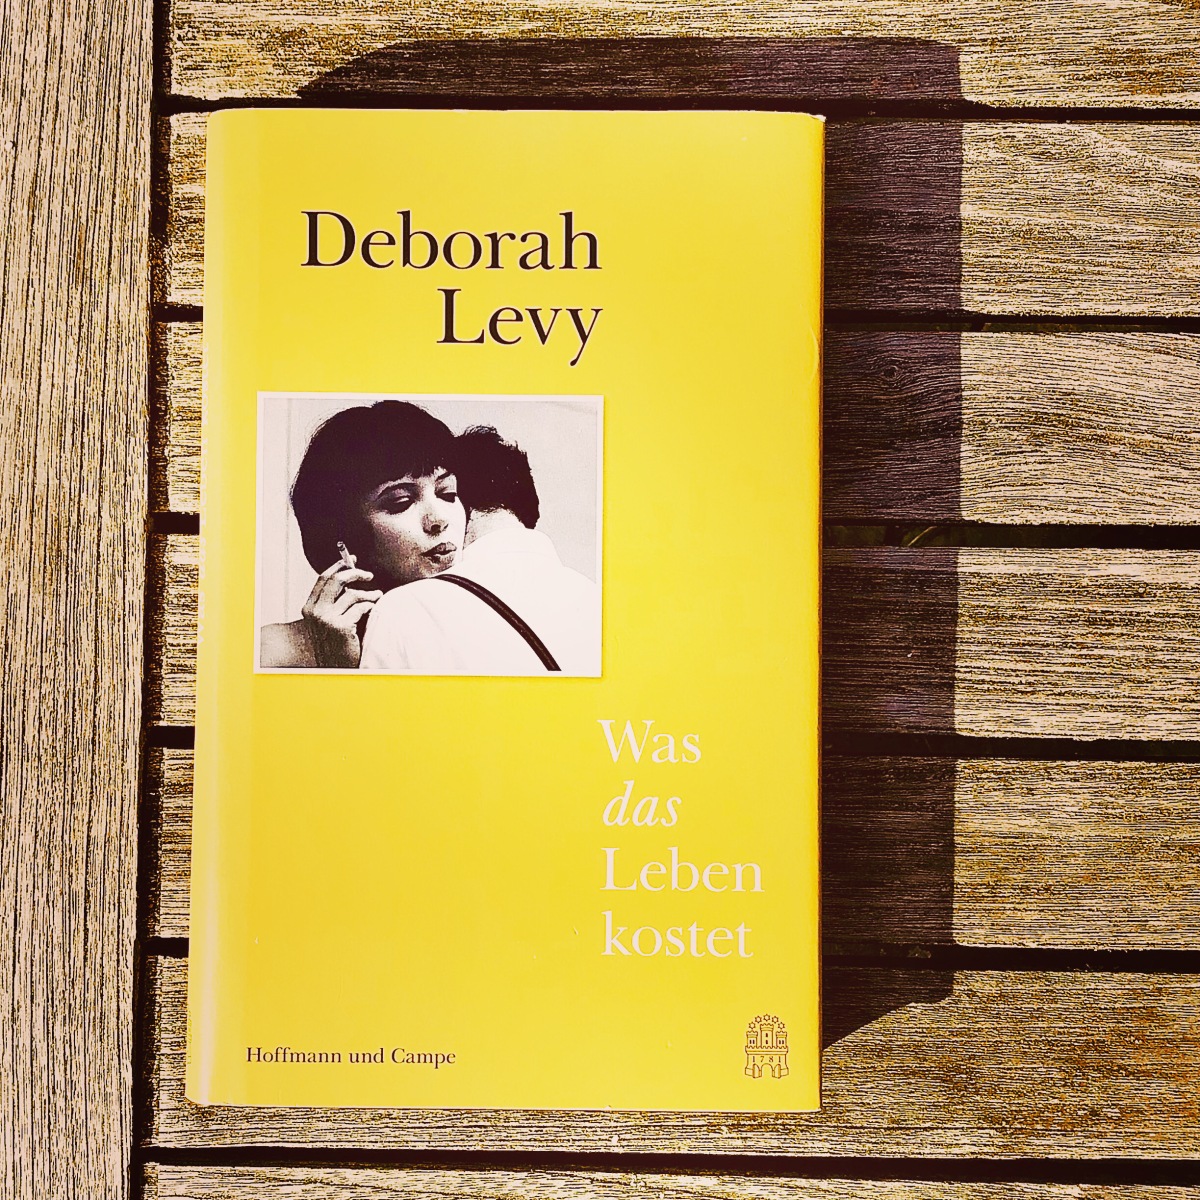 „Was das Leben kostet“ von Deborah Levy